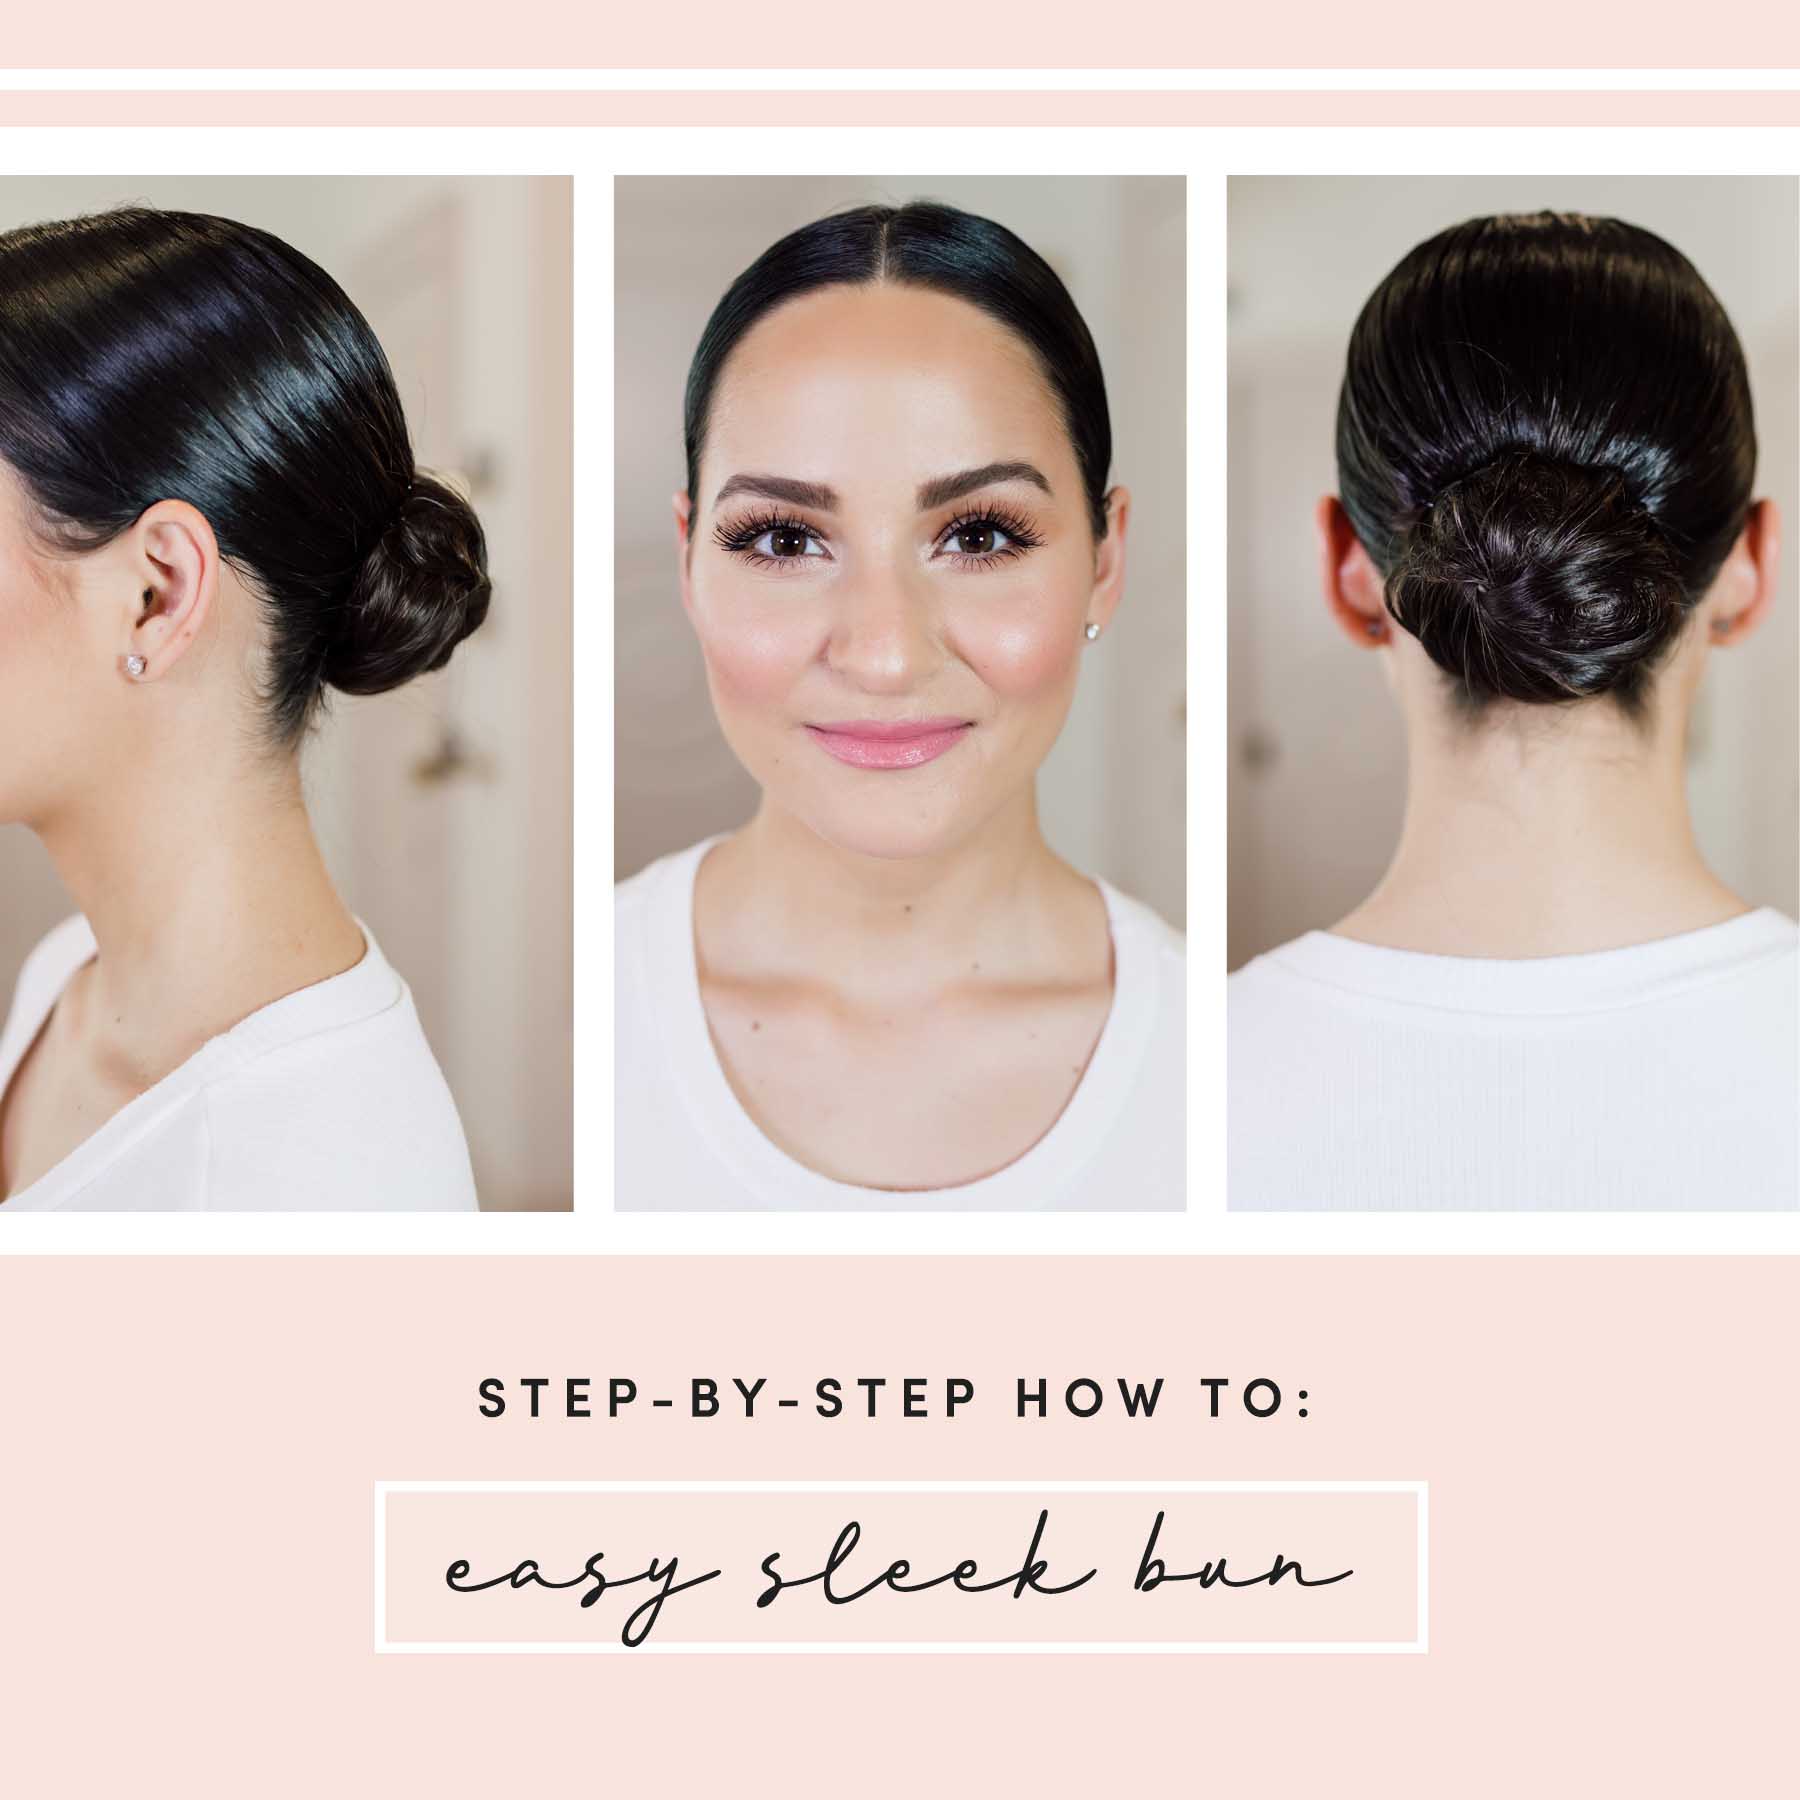 How To: Style Your Hair into a Sleek Bun